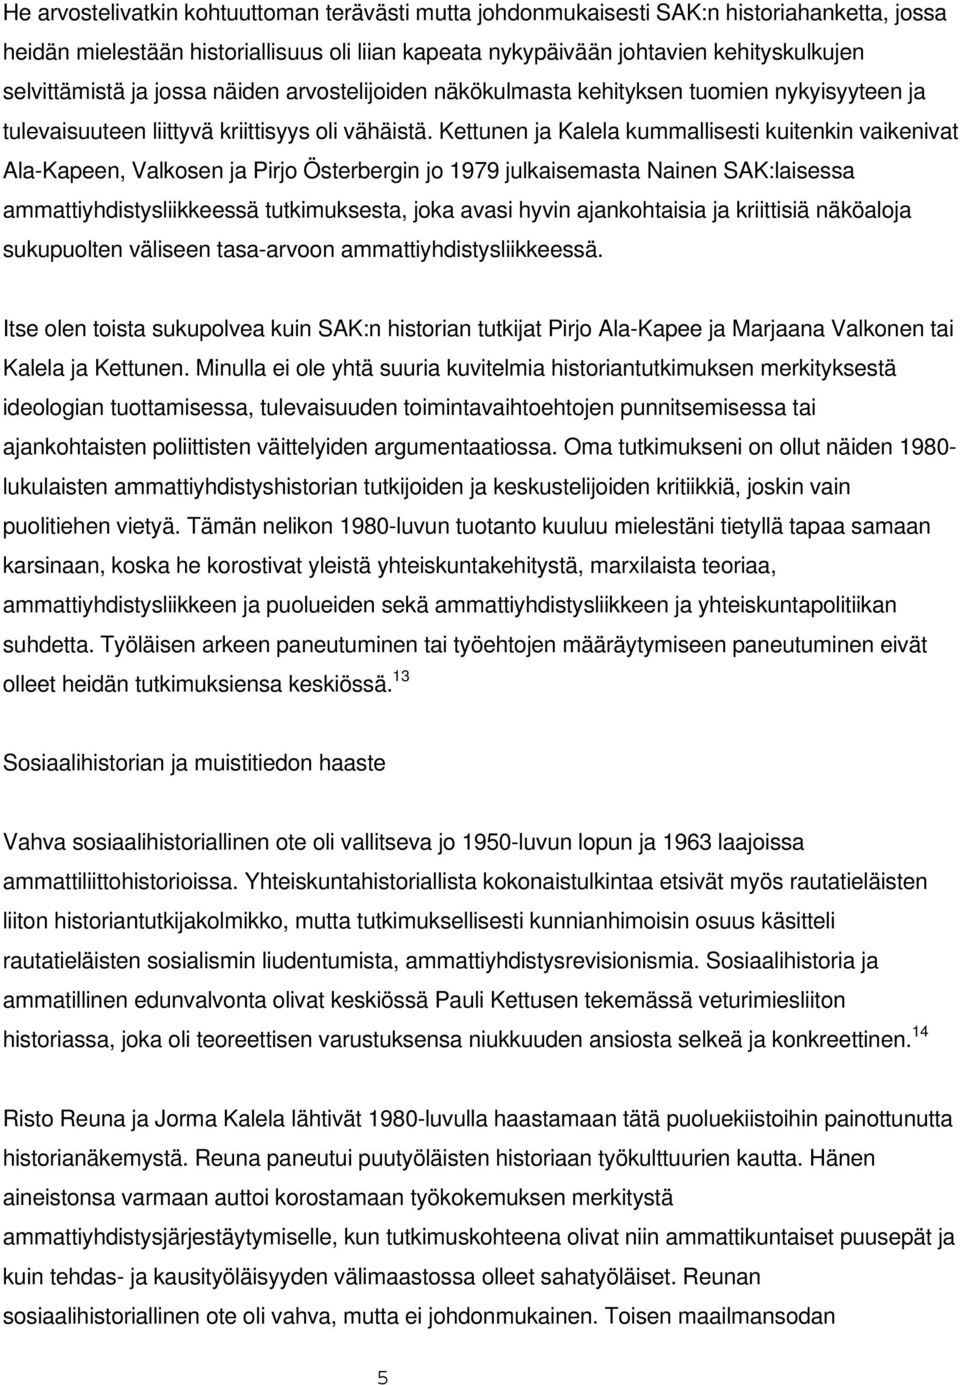 Kettunen ja Kalela kummallisesti kuitenkin vaikenivat Ala-Kapeen, Valkosen ja Pirjo Österbergin jo 1979 julkaisemasta Nainen SAK:laisessa ammattiyhdistysliikkeessä tutkimuksesta, joka avasi hyvin